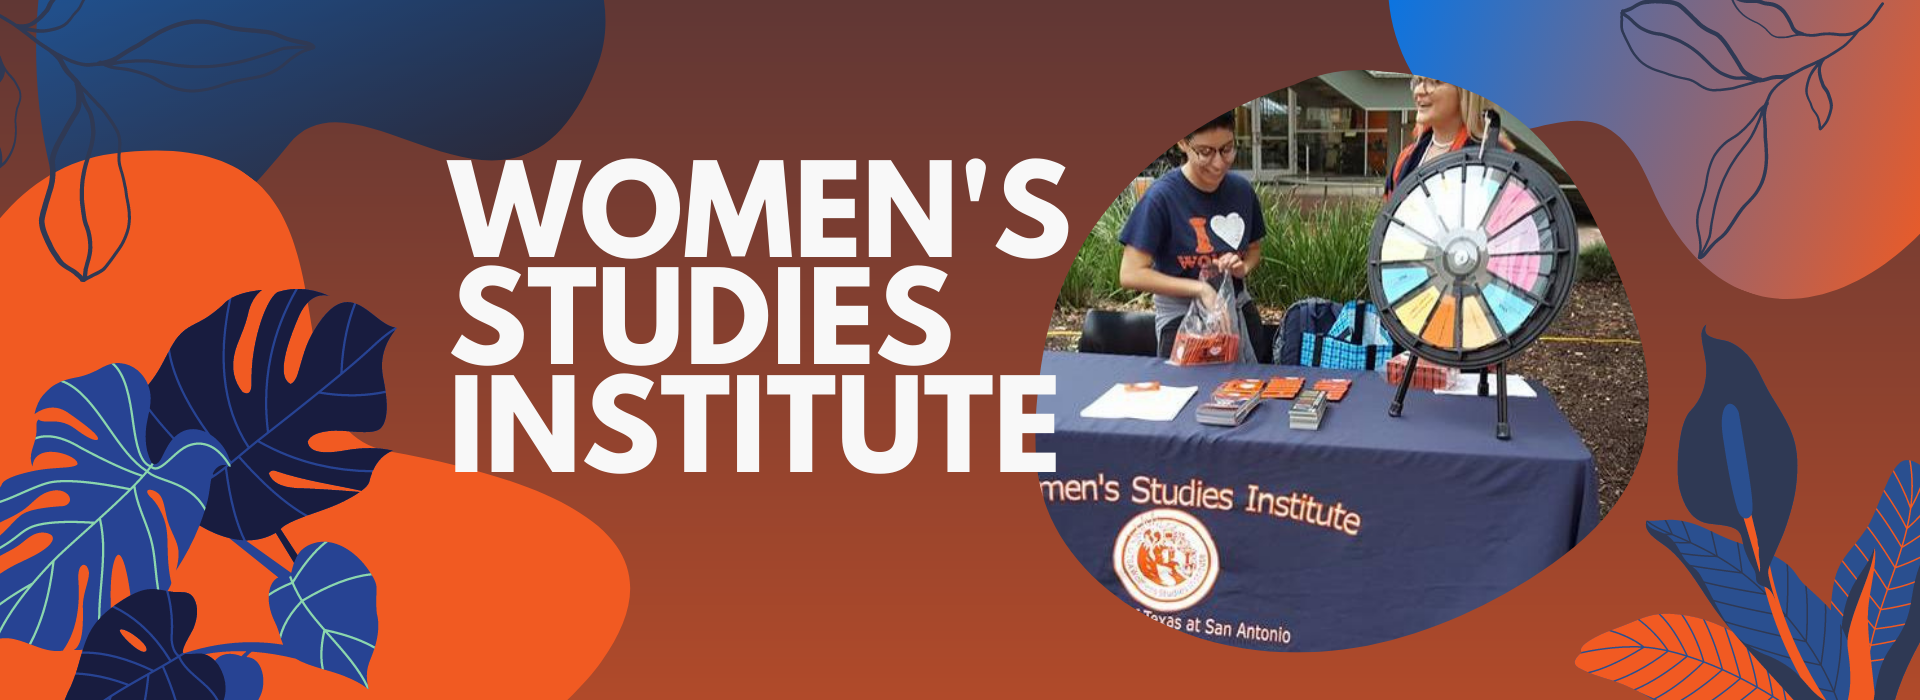 Women's Studies Institute Graphic